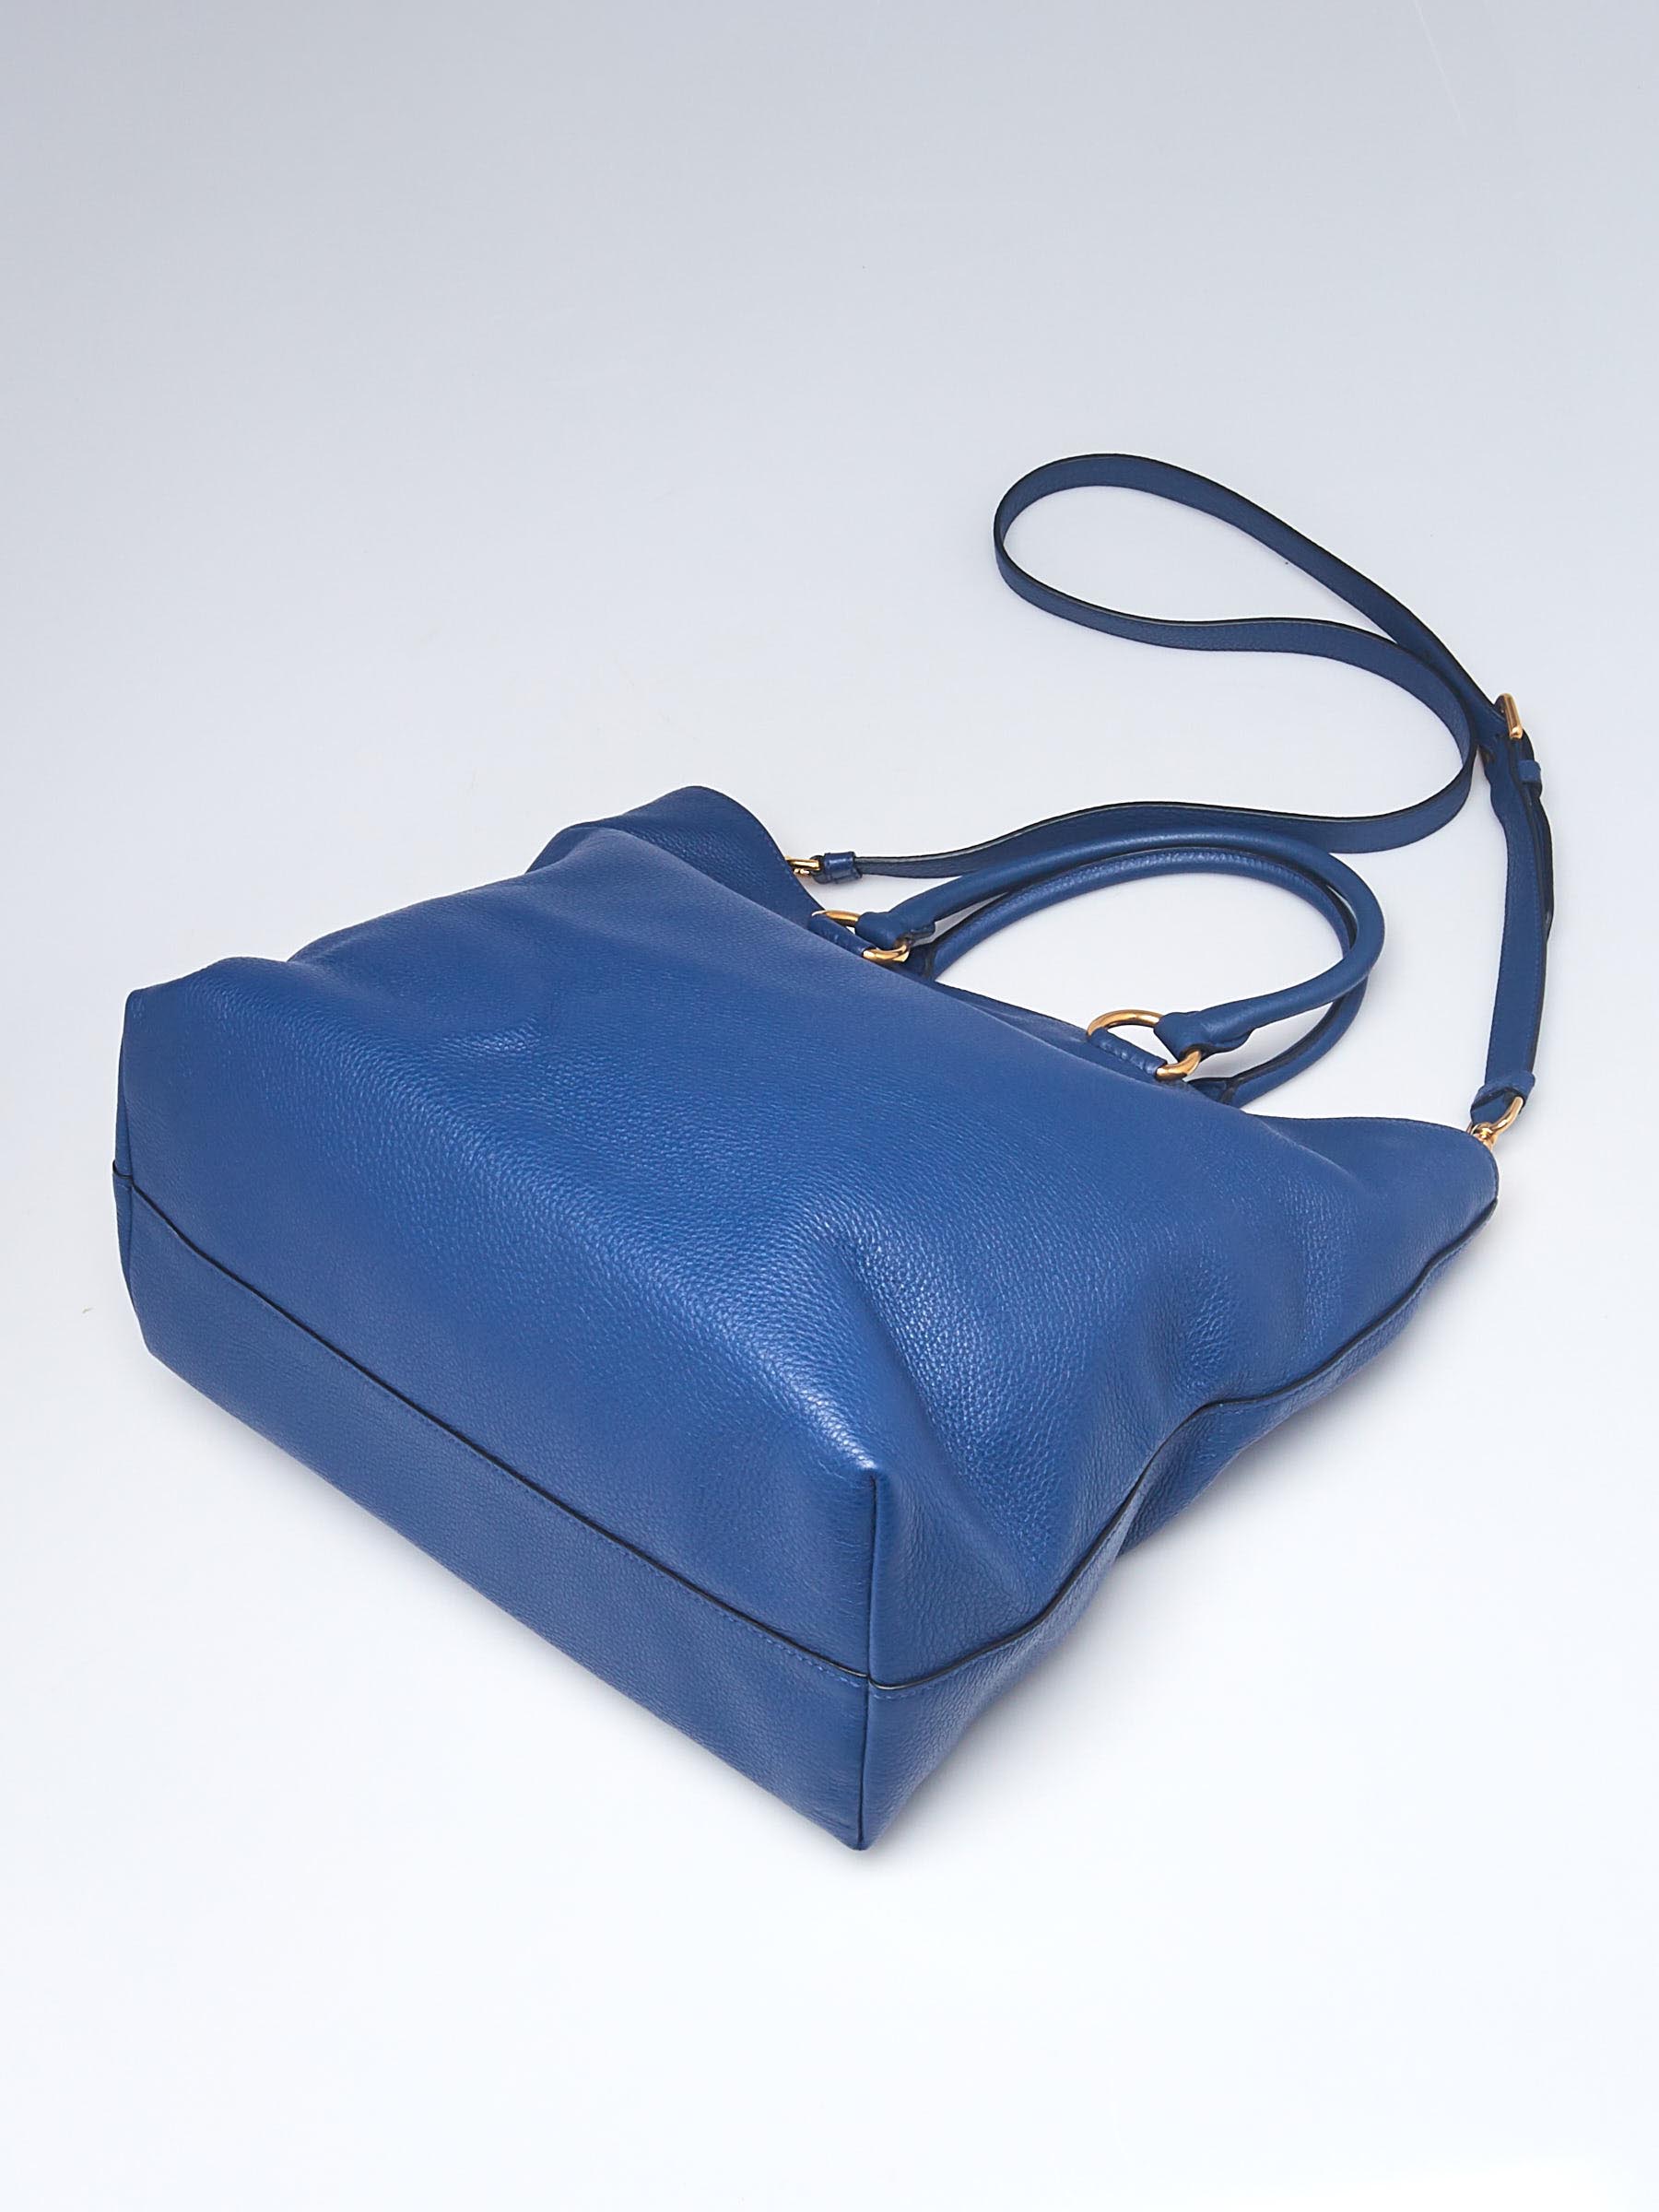 PRADA PRADA Leather Tote Bag 1BG865 (1BG865)